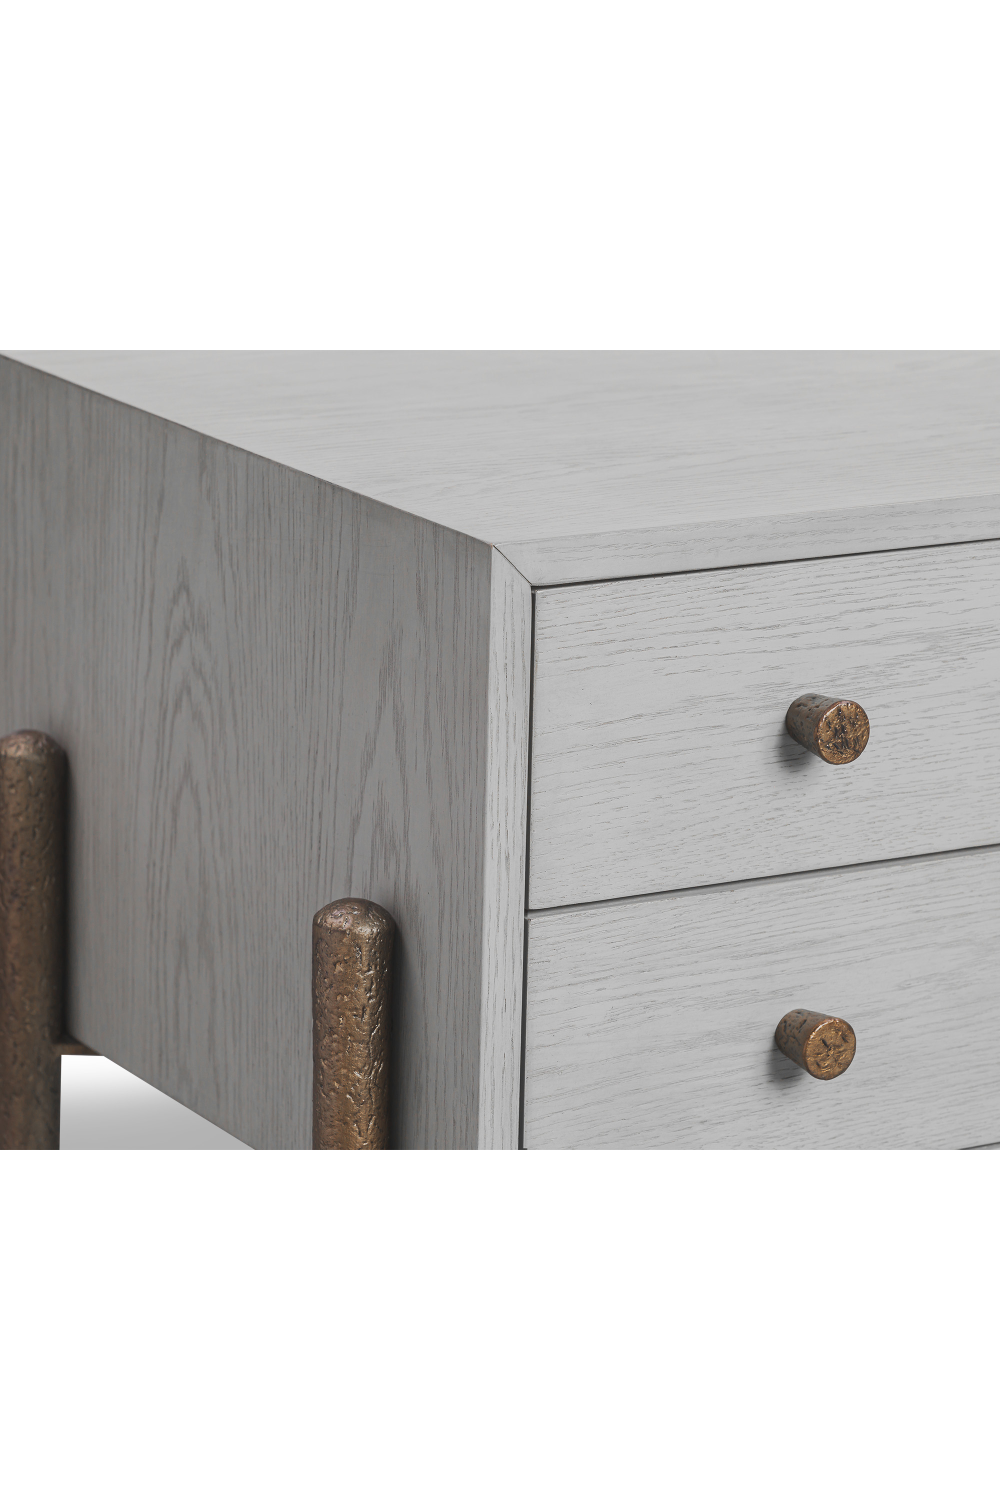 Oak 2-Drawer Bedside Table | Liang & Eimil Nella | Oroa.com